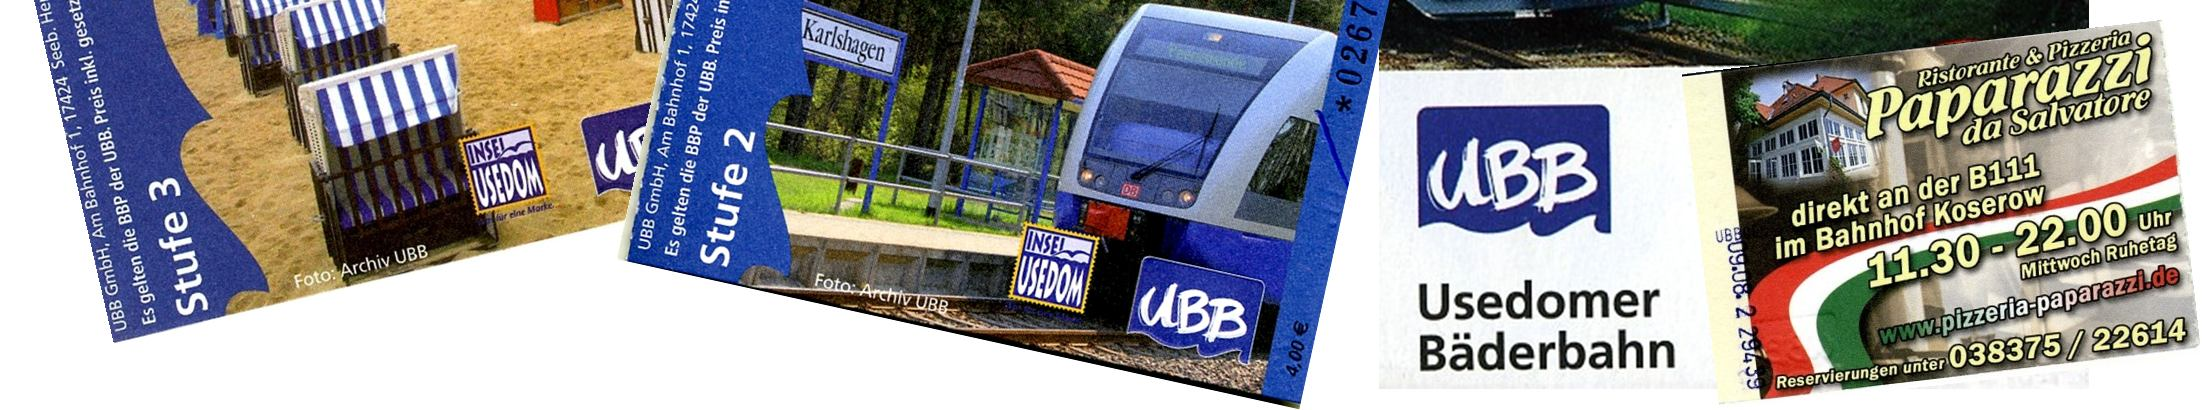 Usedomer Bäderbahn 03.09.